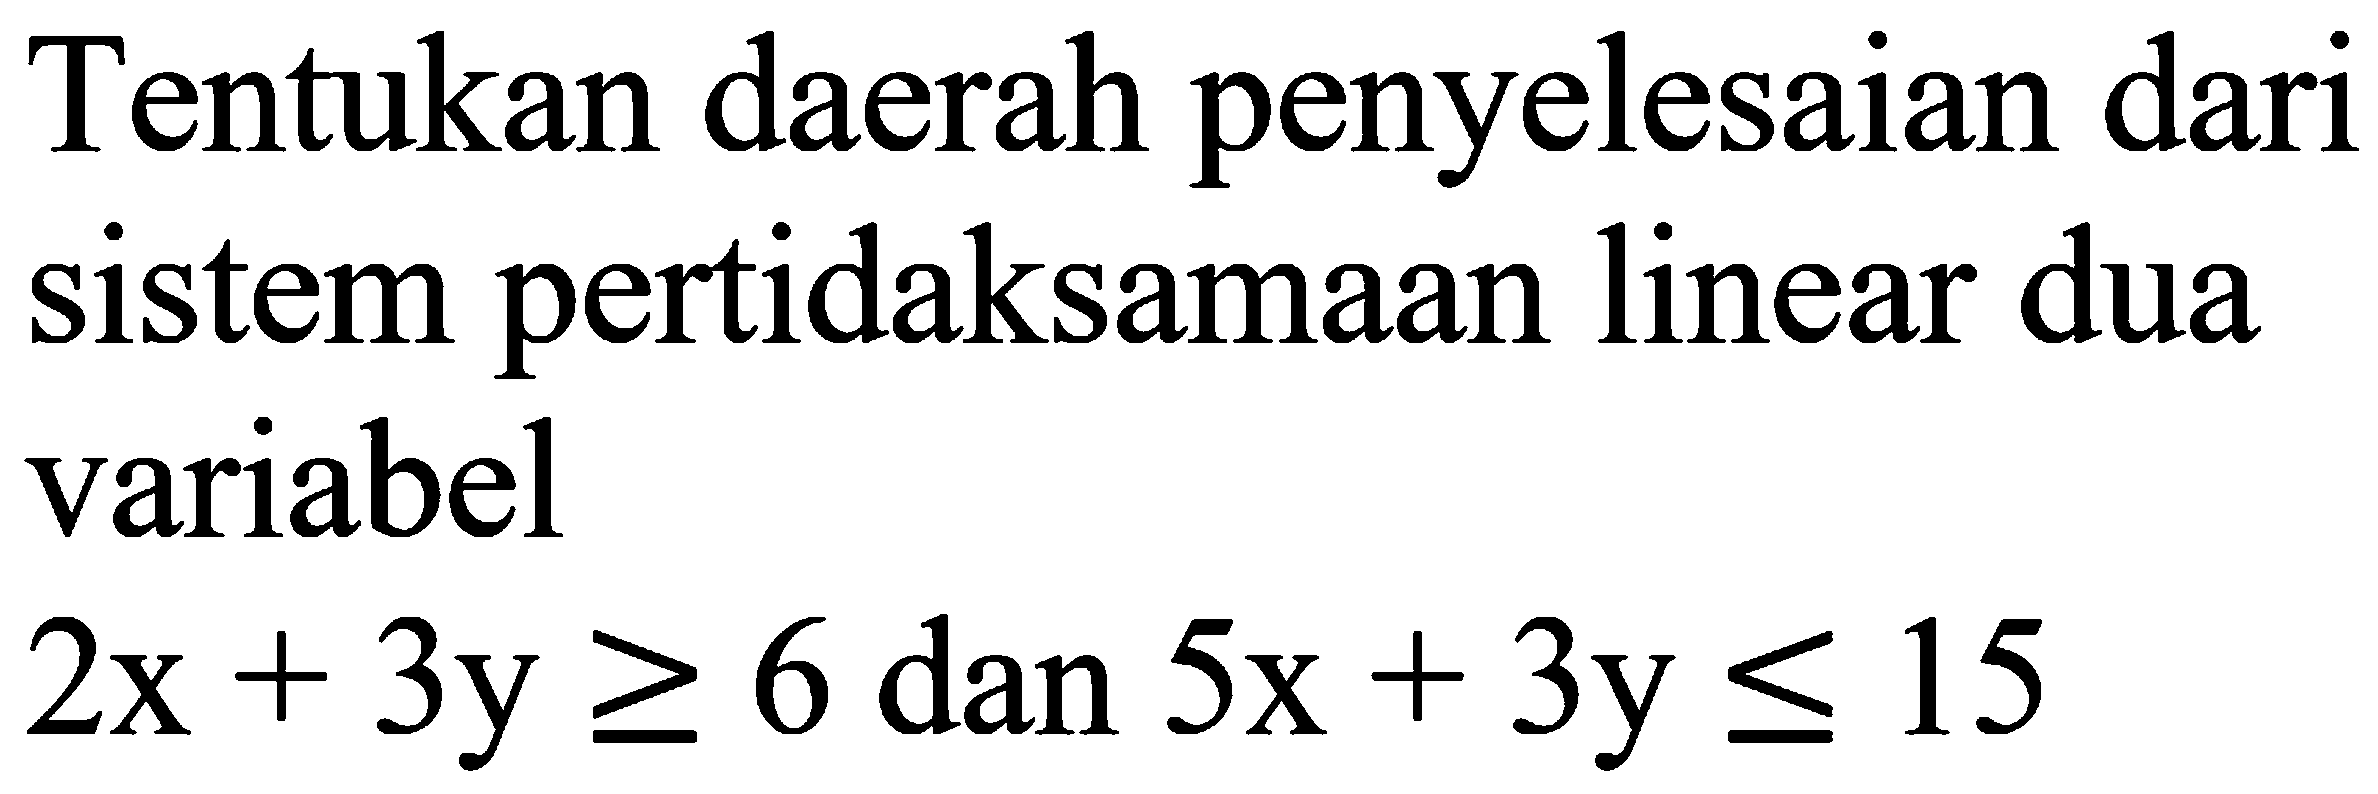 Tentukan daerah penyelesaian dari sistem pertidaksamaan linear dua variabel 2x+3y>=6 dan 5x+3y<=15